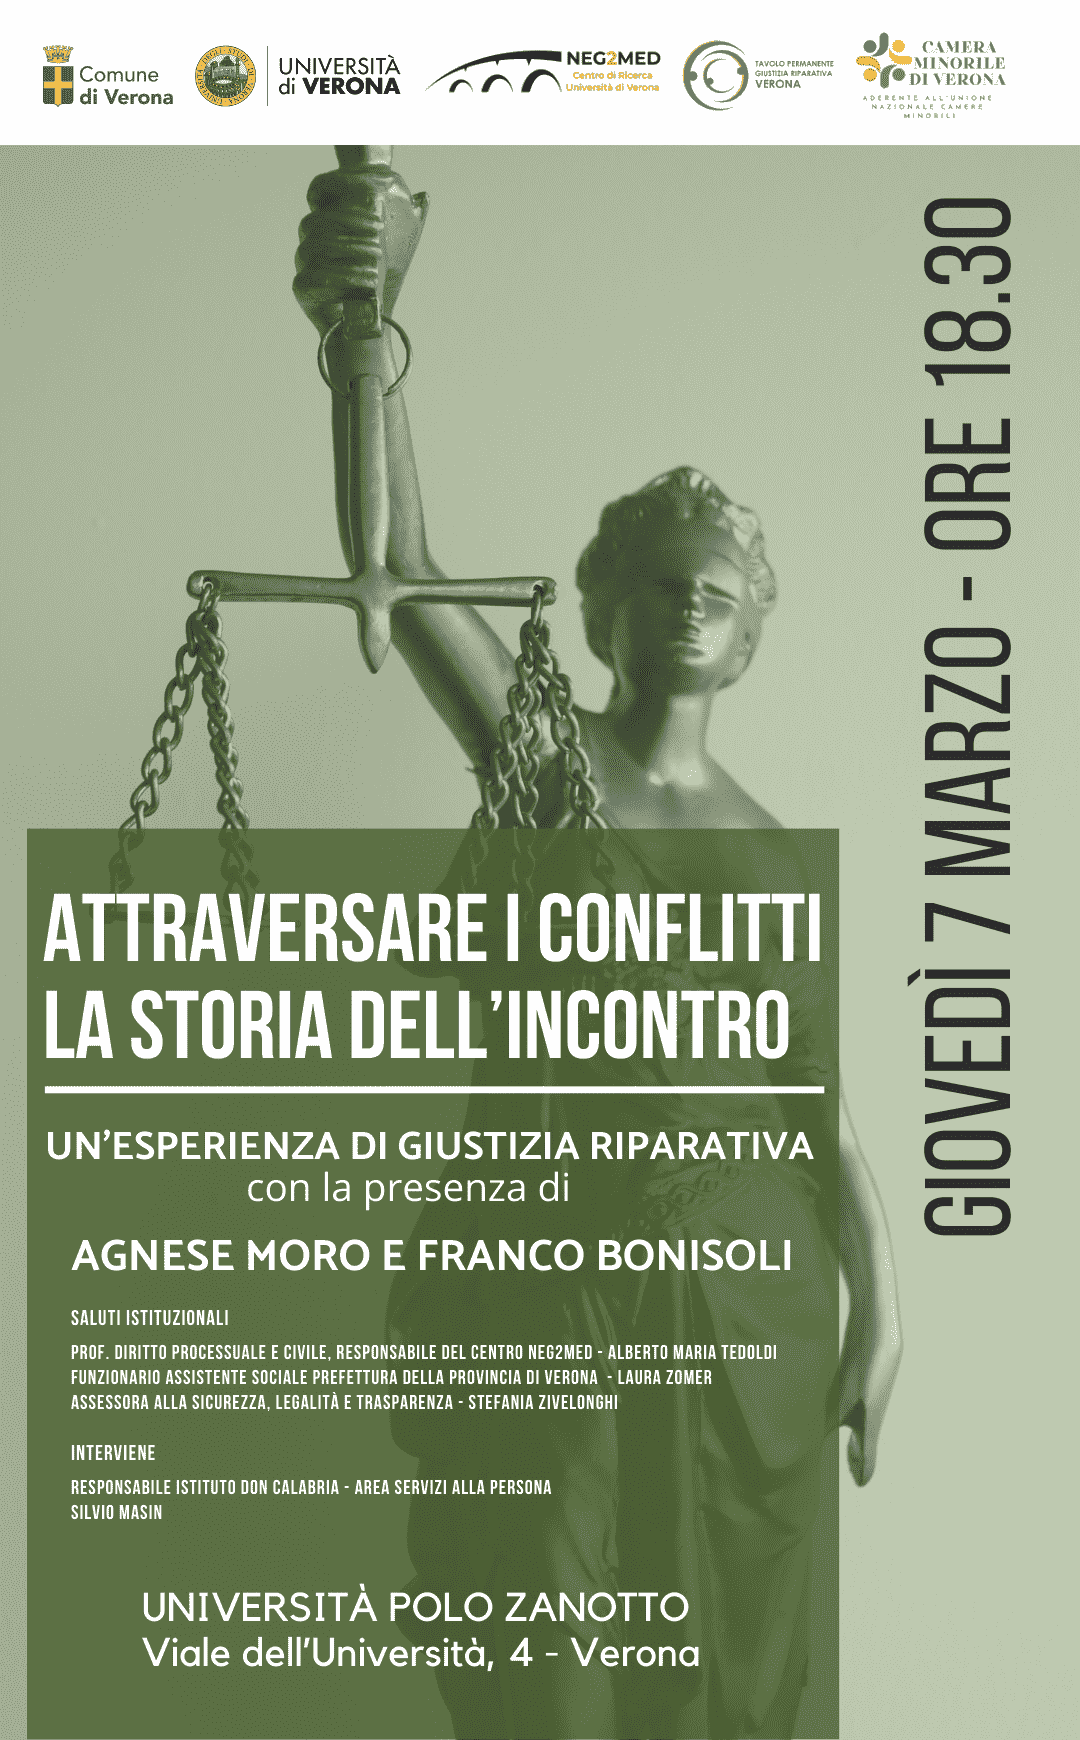 Giustizia Riparativa - Università di Verona - Agnese Moro - Franco Bonisoli